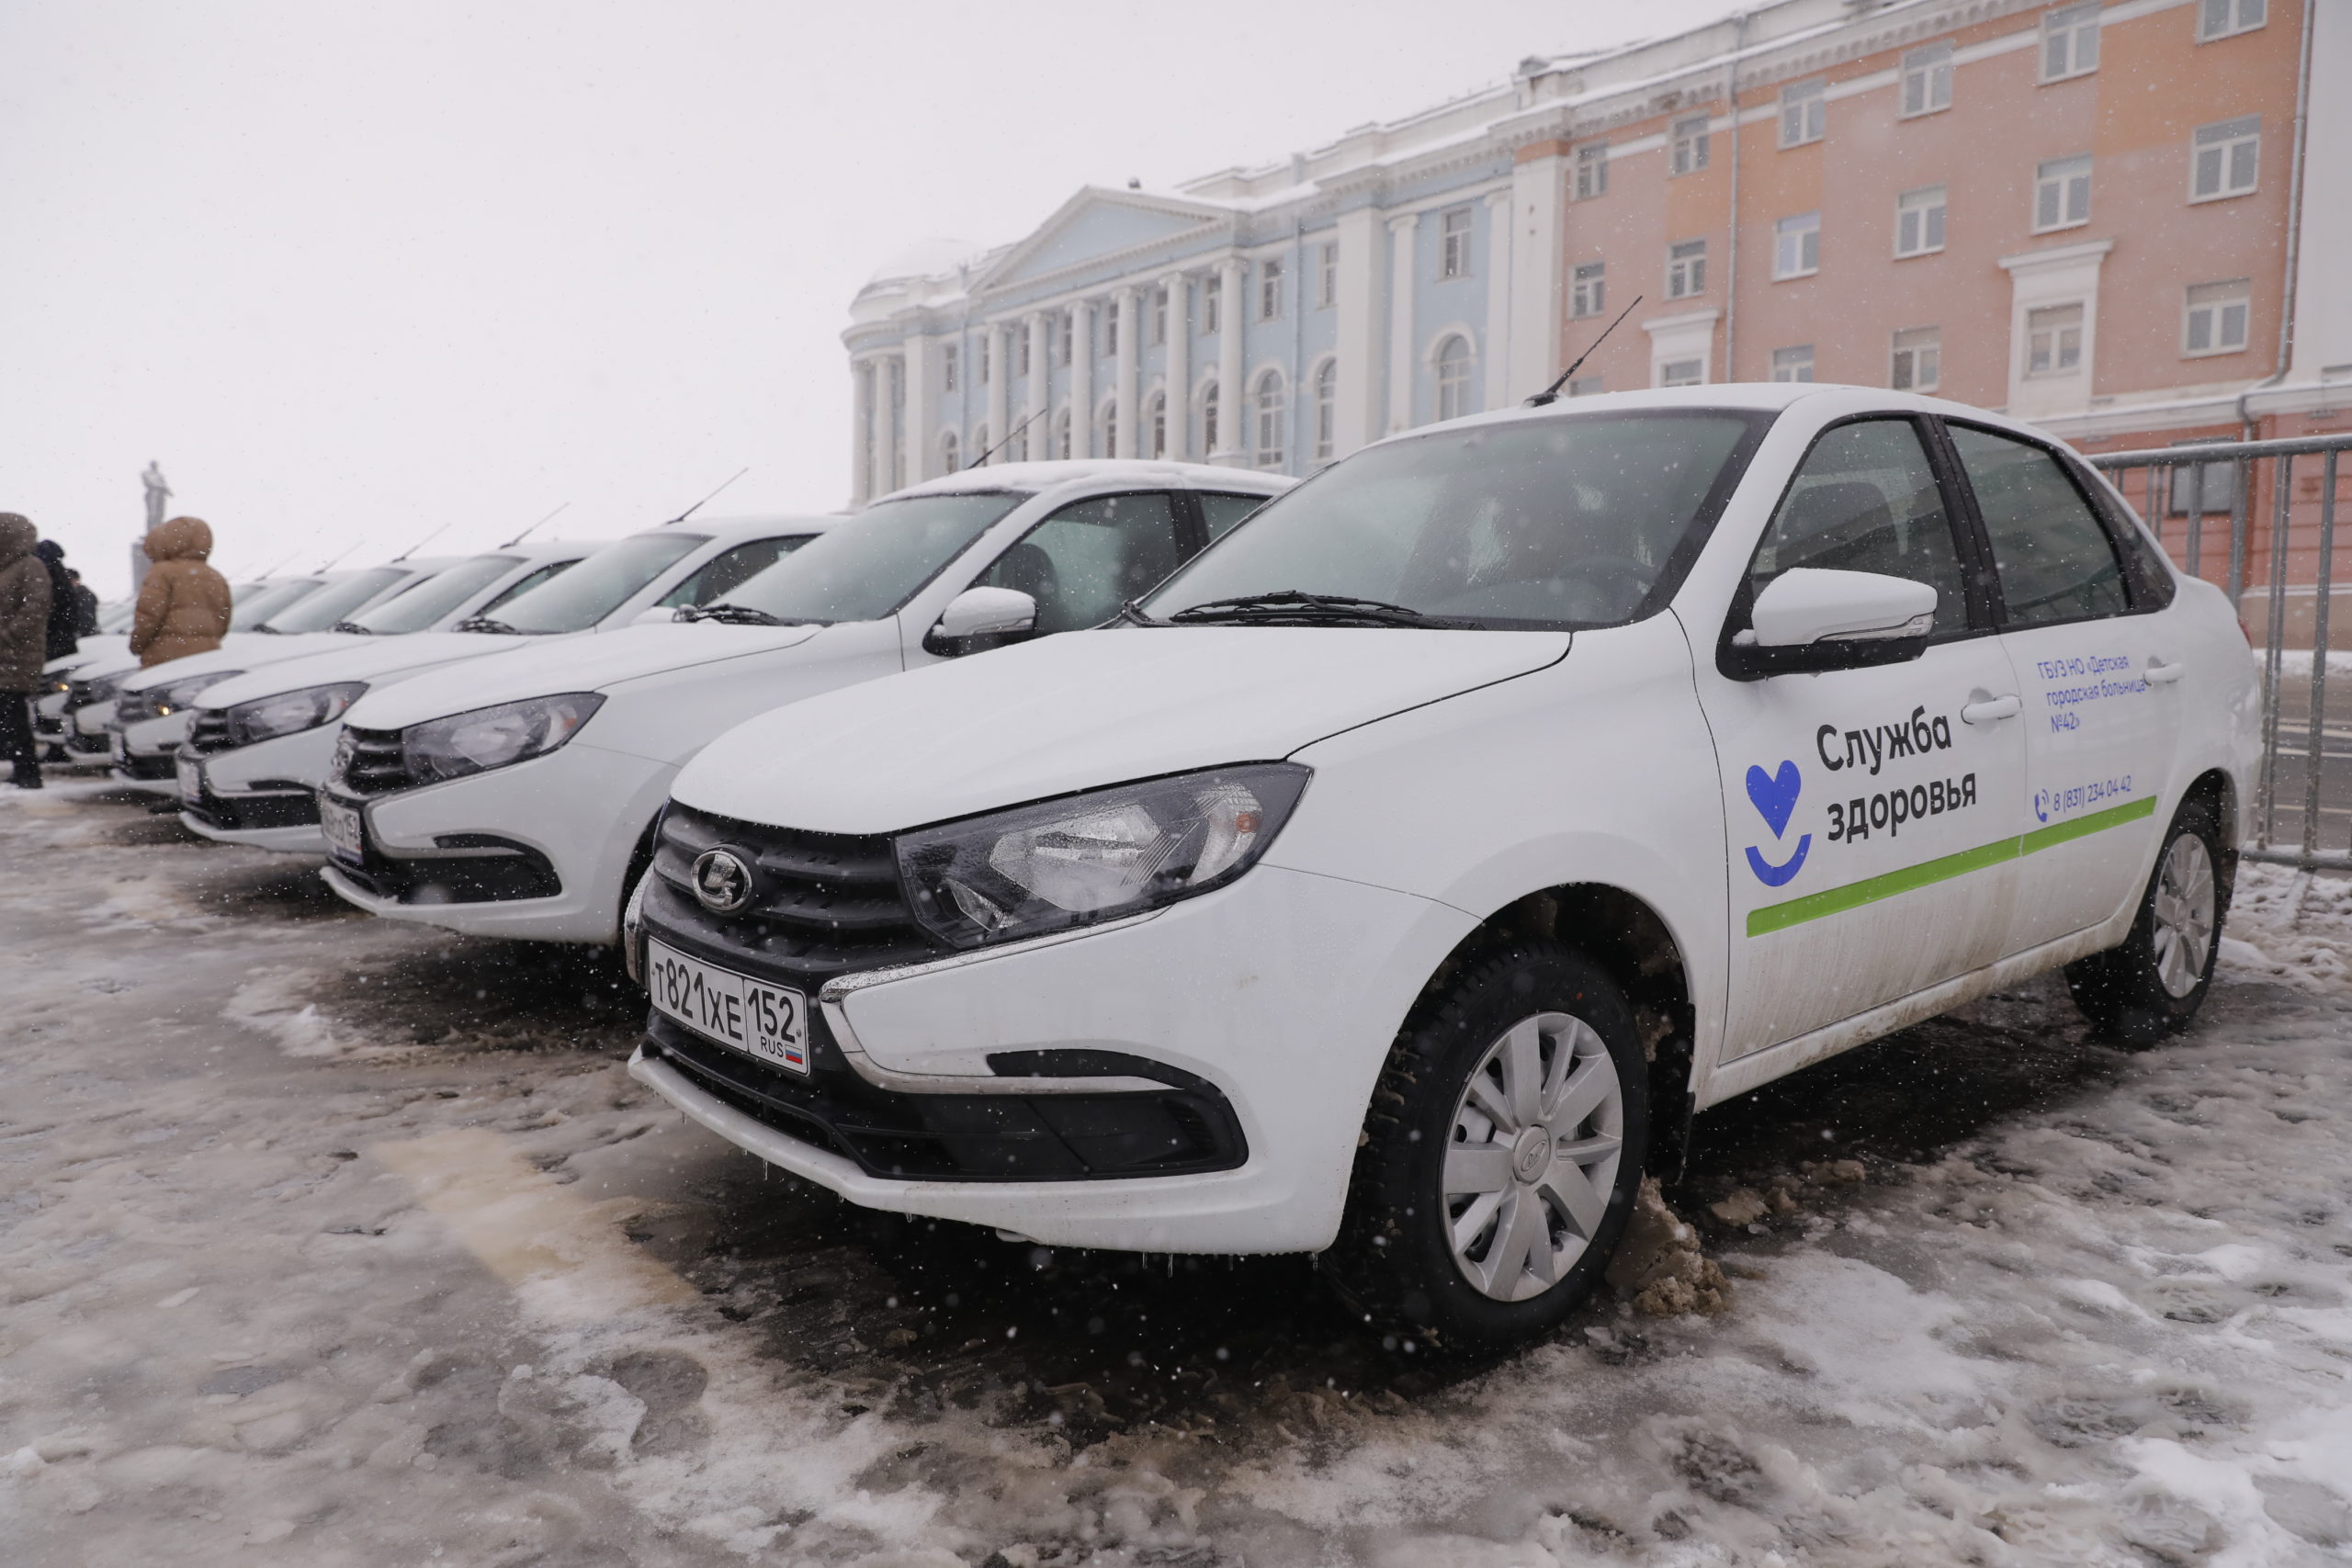 59 новых легковых автомобилей вручили медицинским организациям шести муниципалитетов Нижегородской области